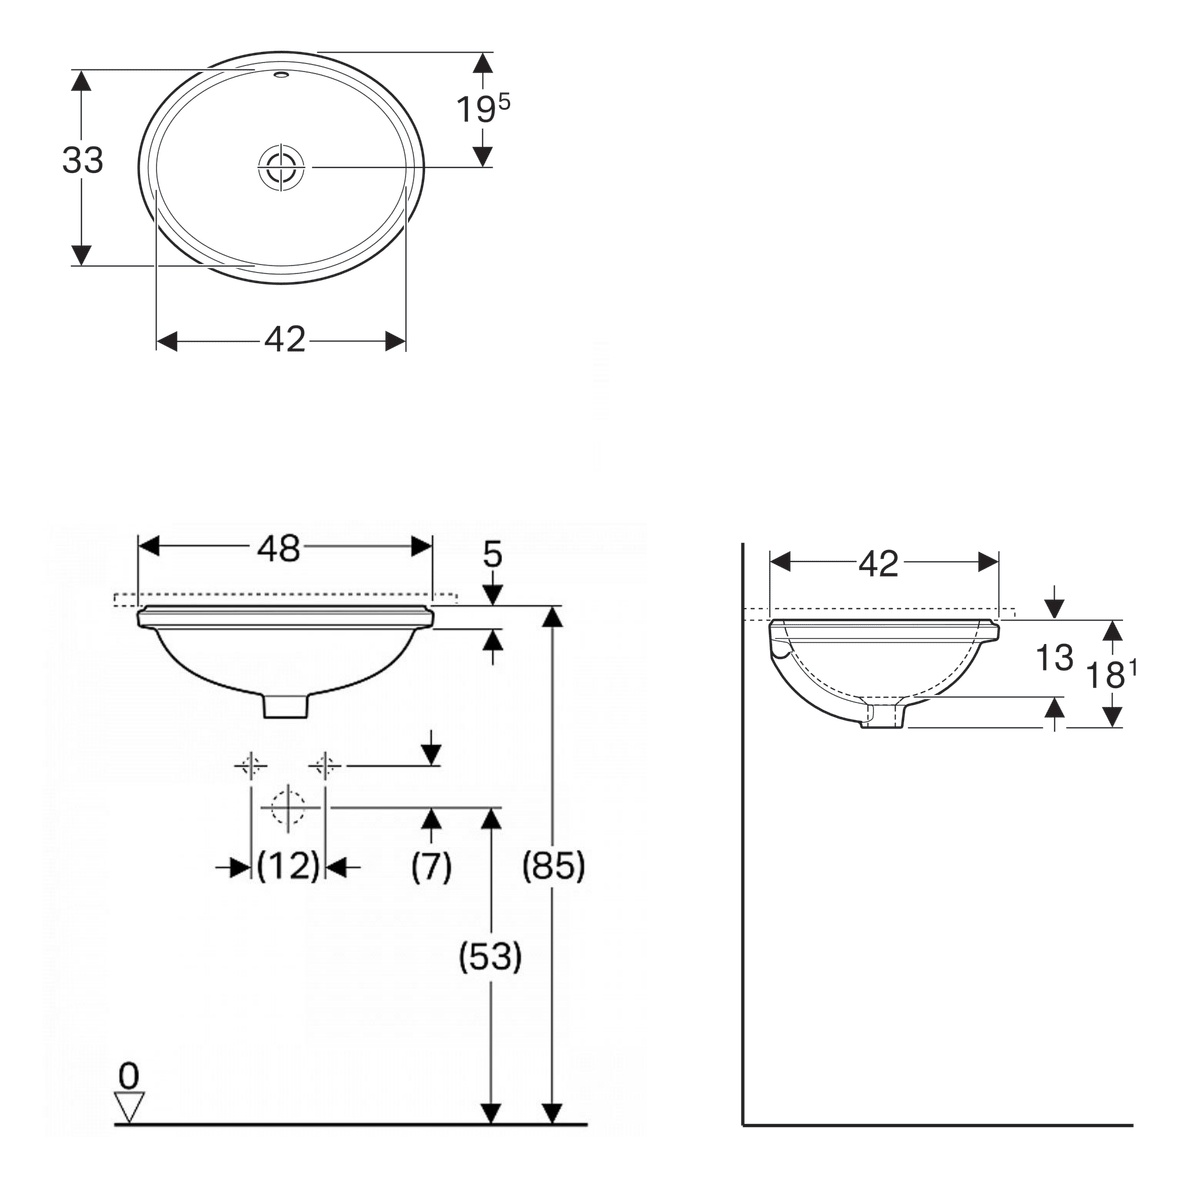 Раковина врізна для ванної під стільницю 480мм x 420мм GEBERIT VariForm білий овальна 500.749.01.2